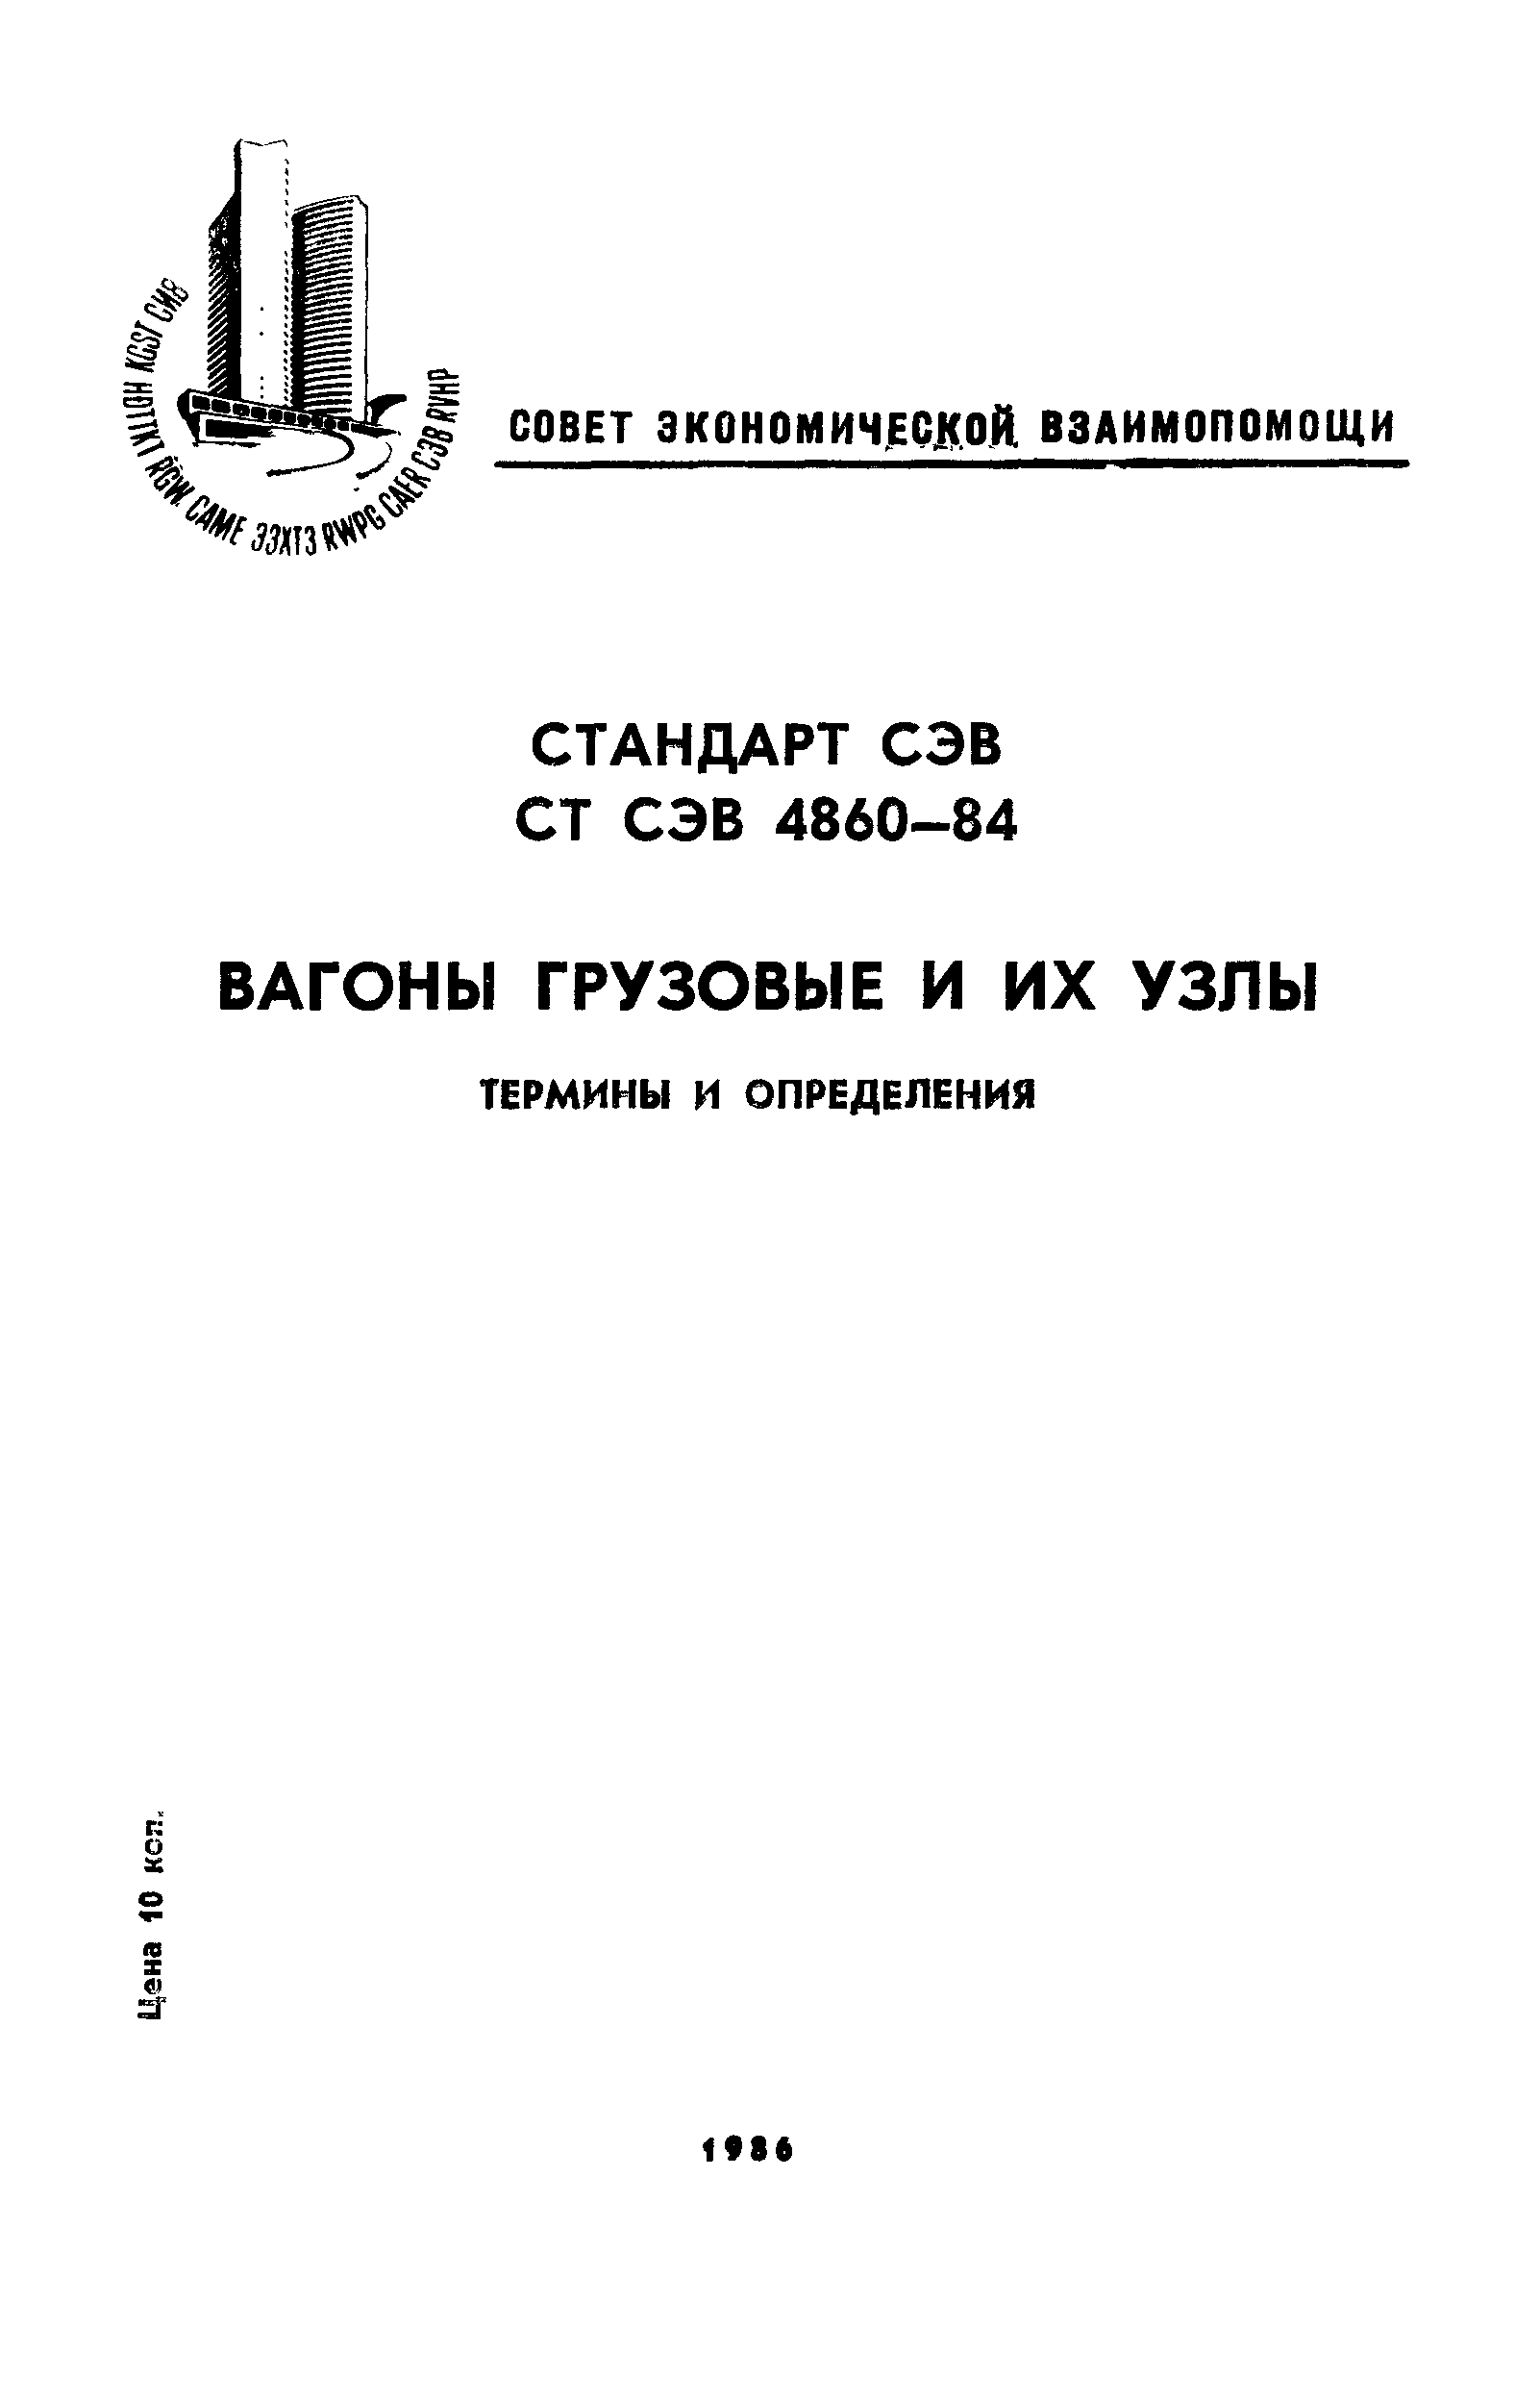 СТ СЭВ 4860-84